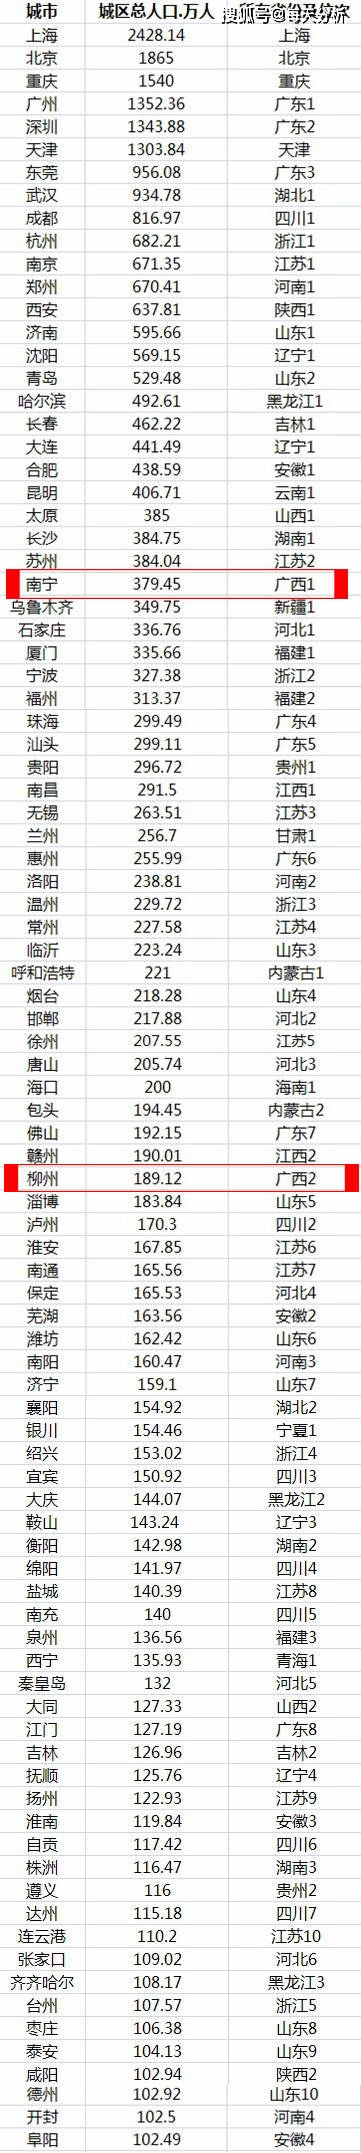 中国城市城区人口排名_中国城市人口TOP10出炉:1座城市首次突破2千万,2座城市首